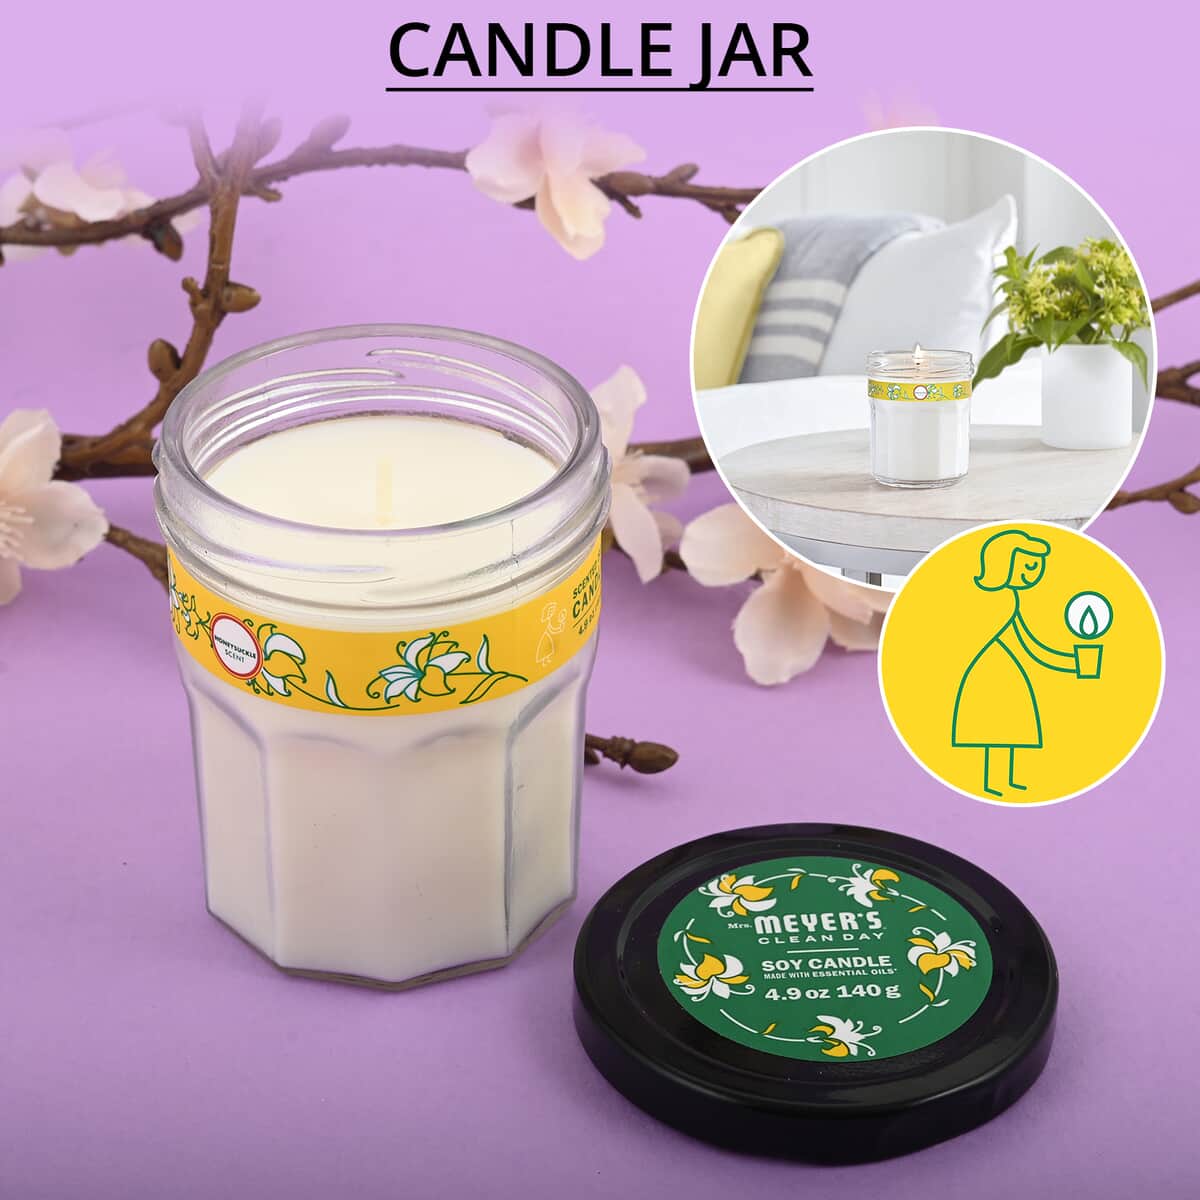 Mrs. Meyer's Clean Day Jar Candle - Honeysuckle 4.9 oz image number 1